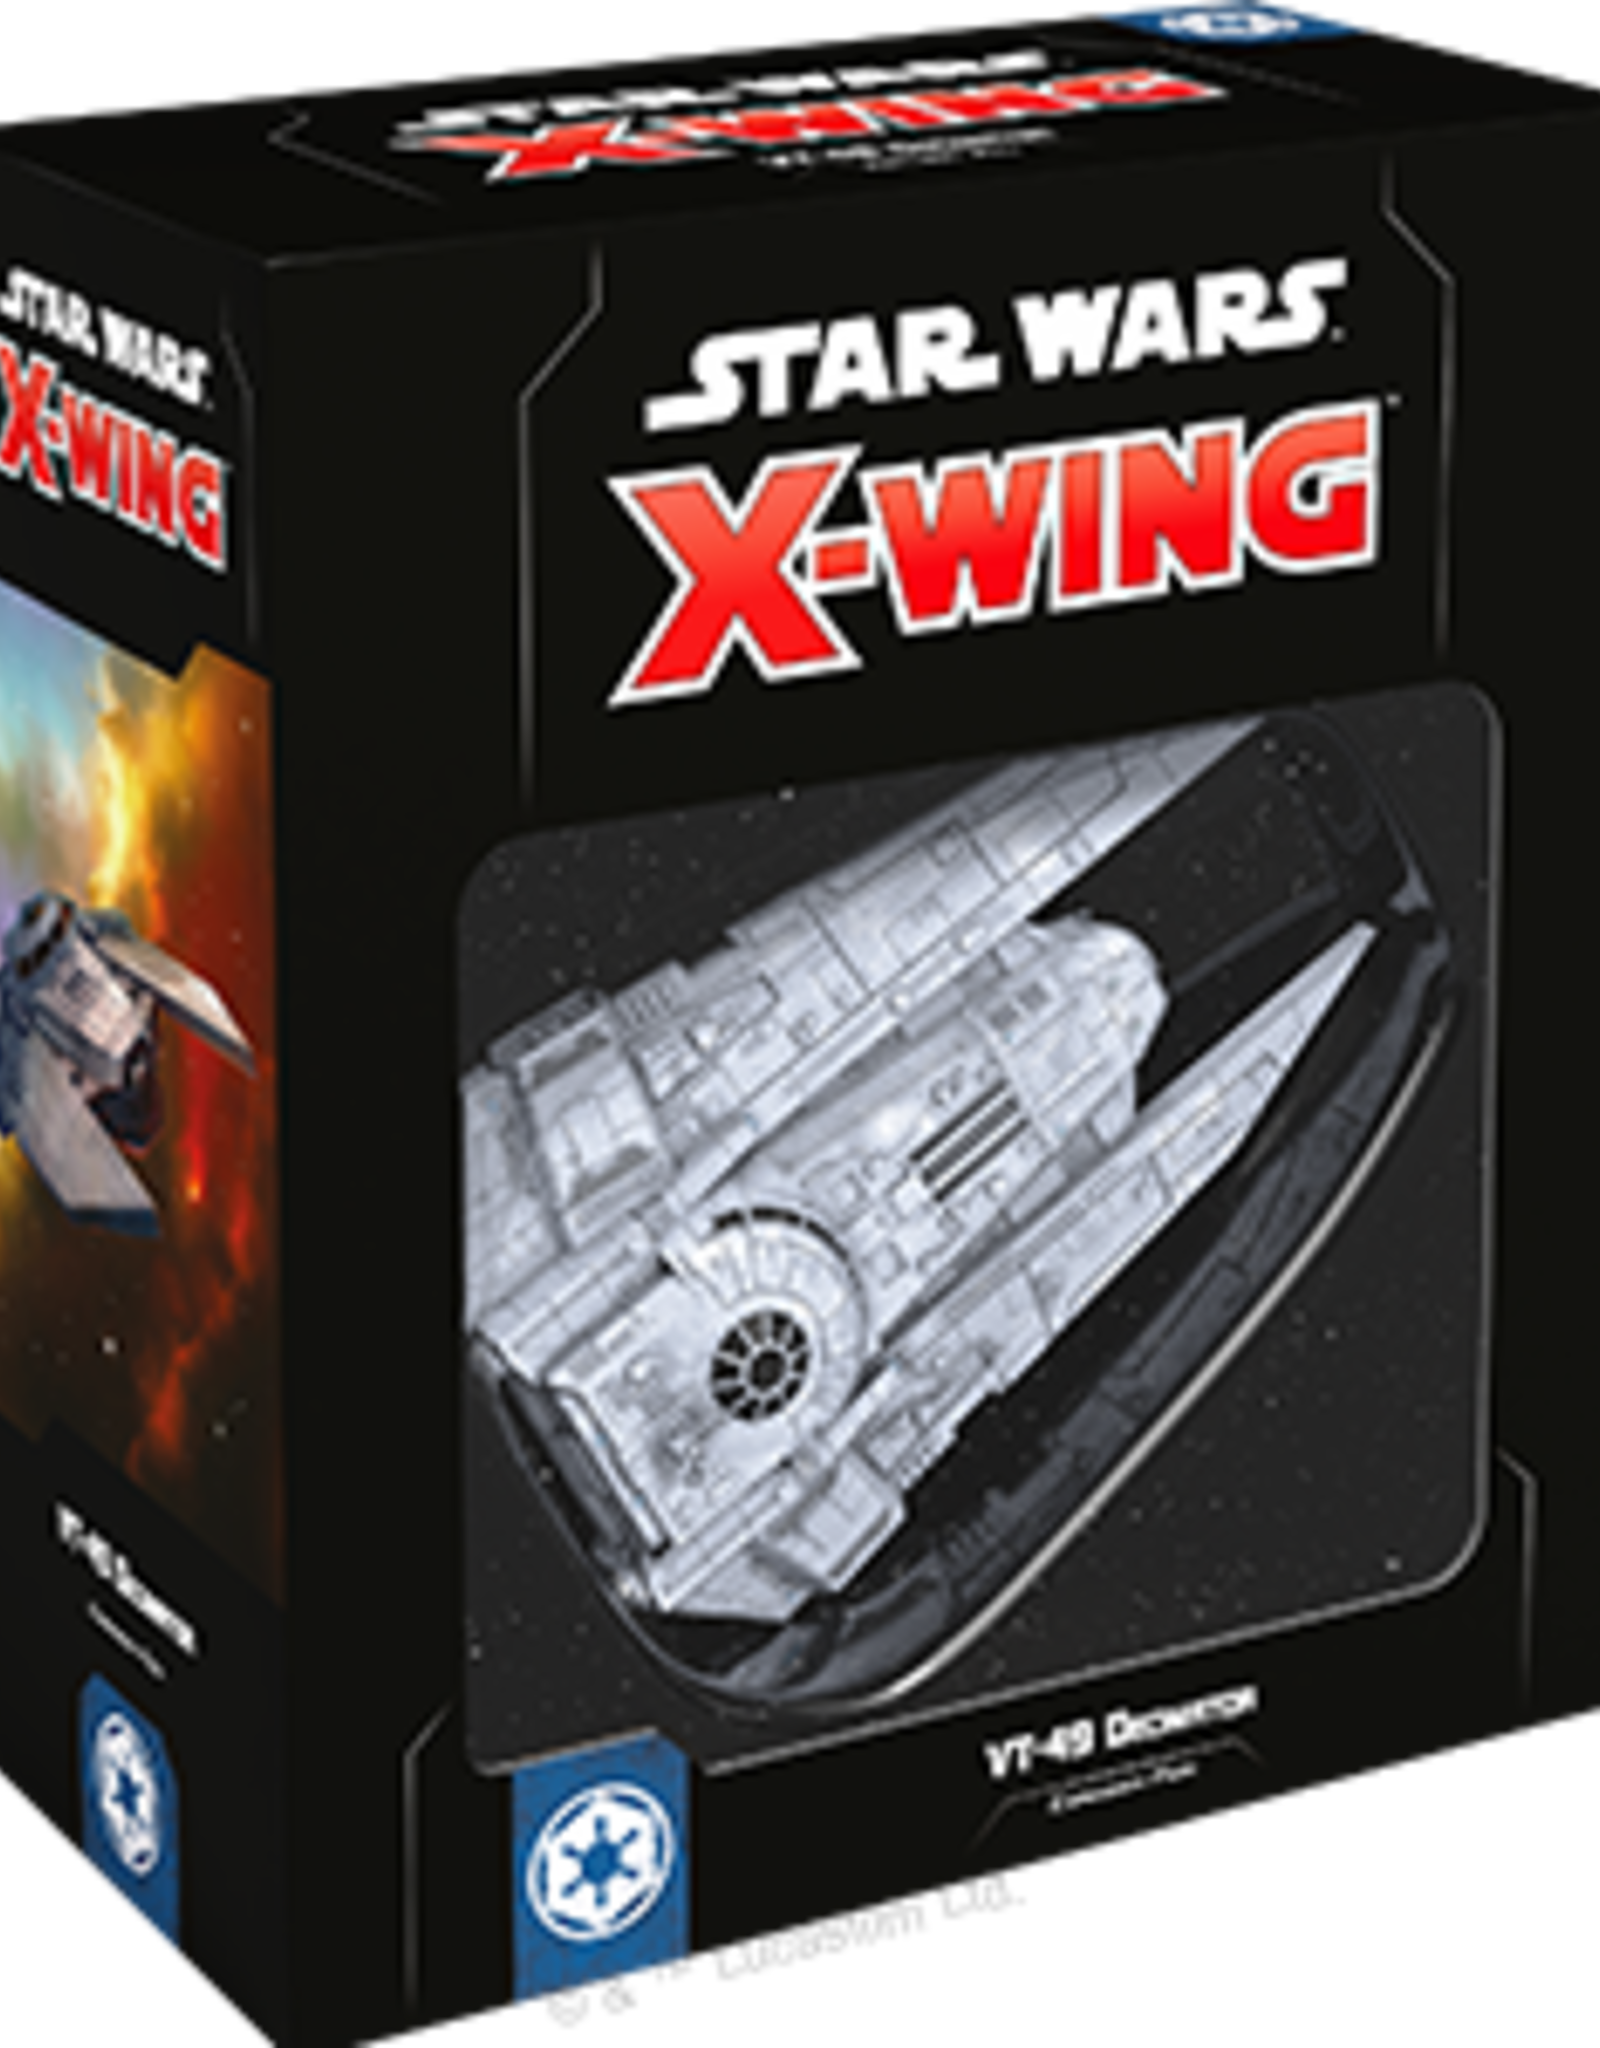 FFG Star Wars X-Wing 2.0: VT-49 Decimator Expansion 2.0 Pack